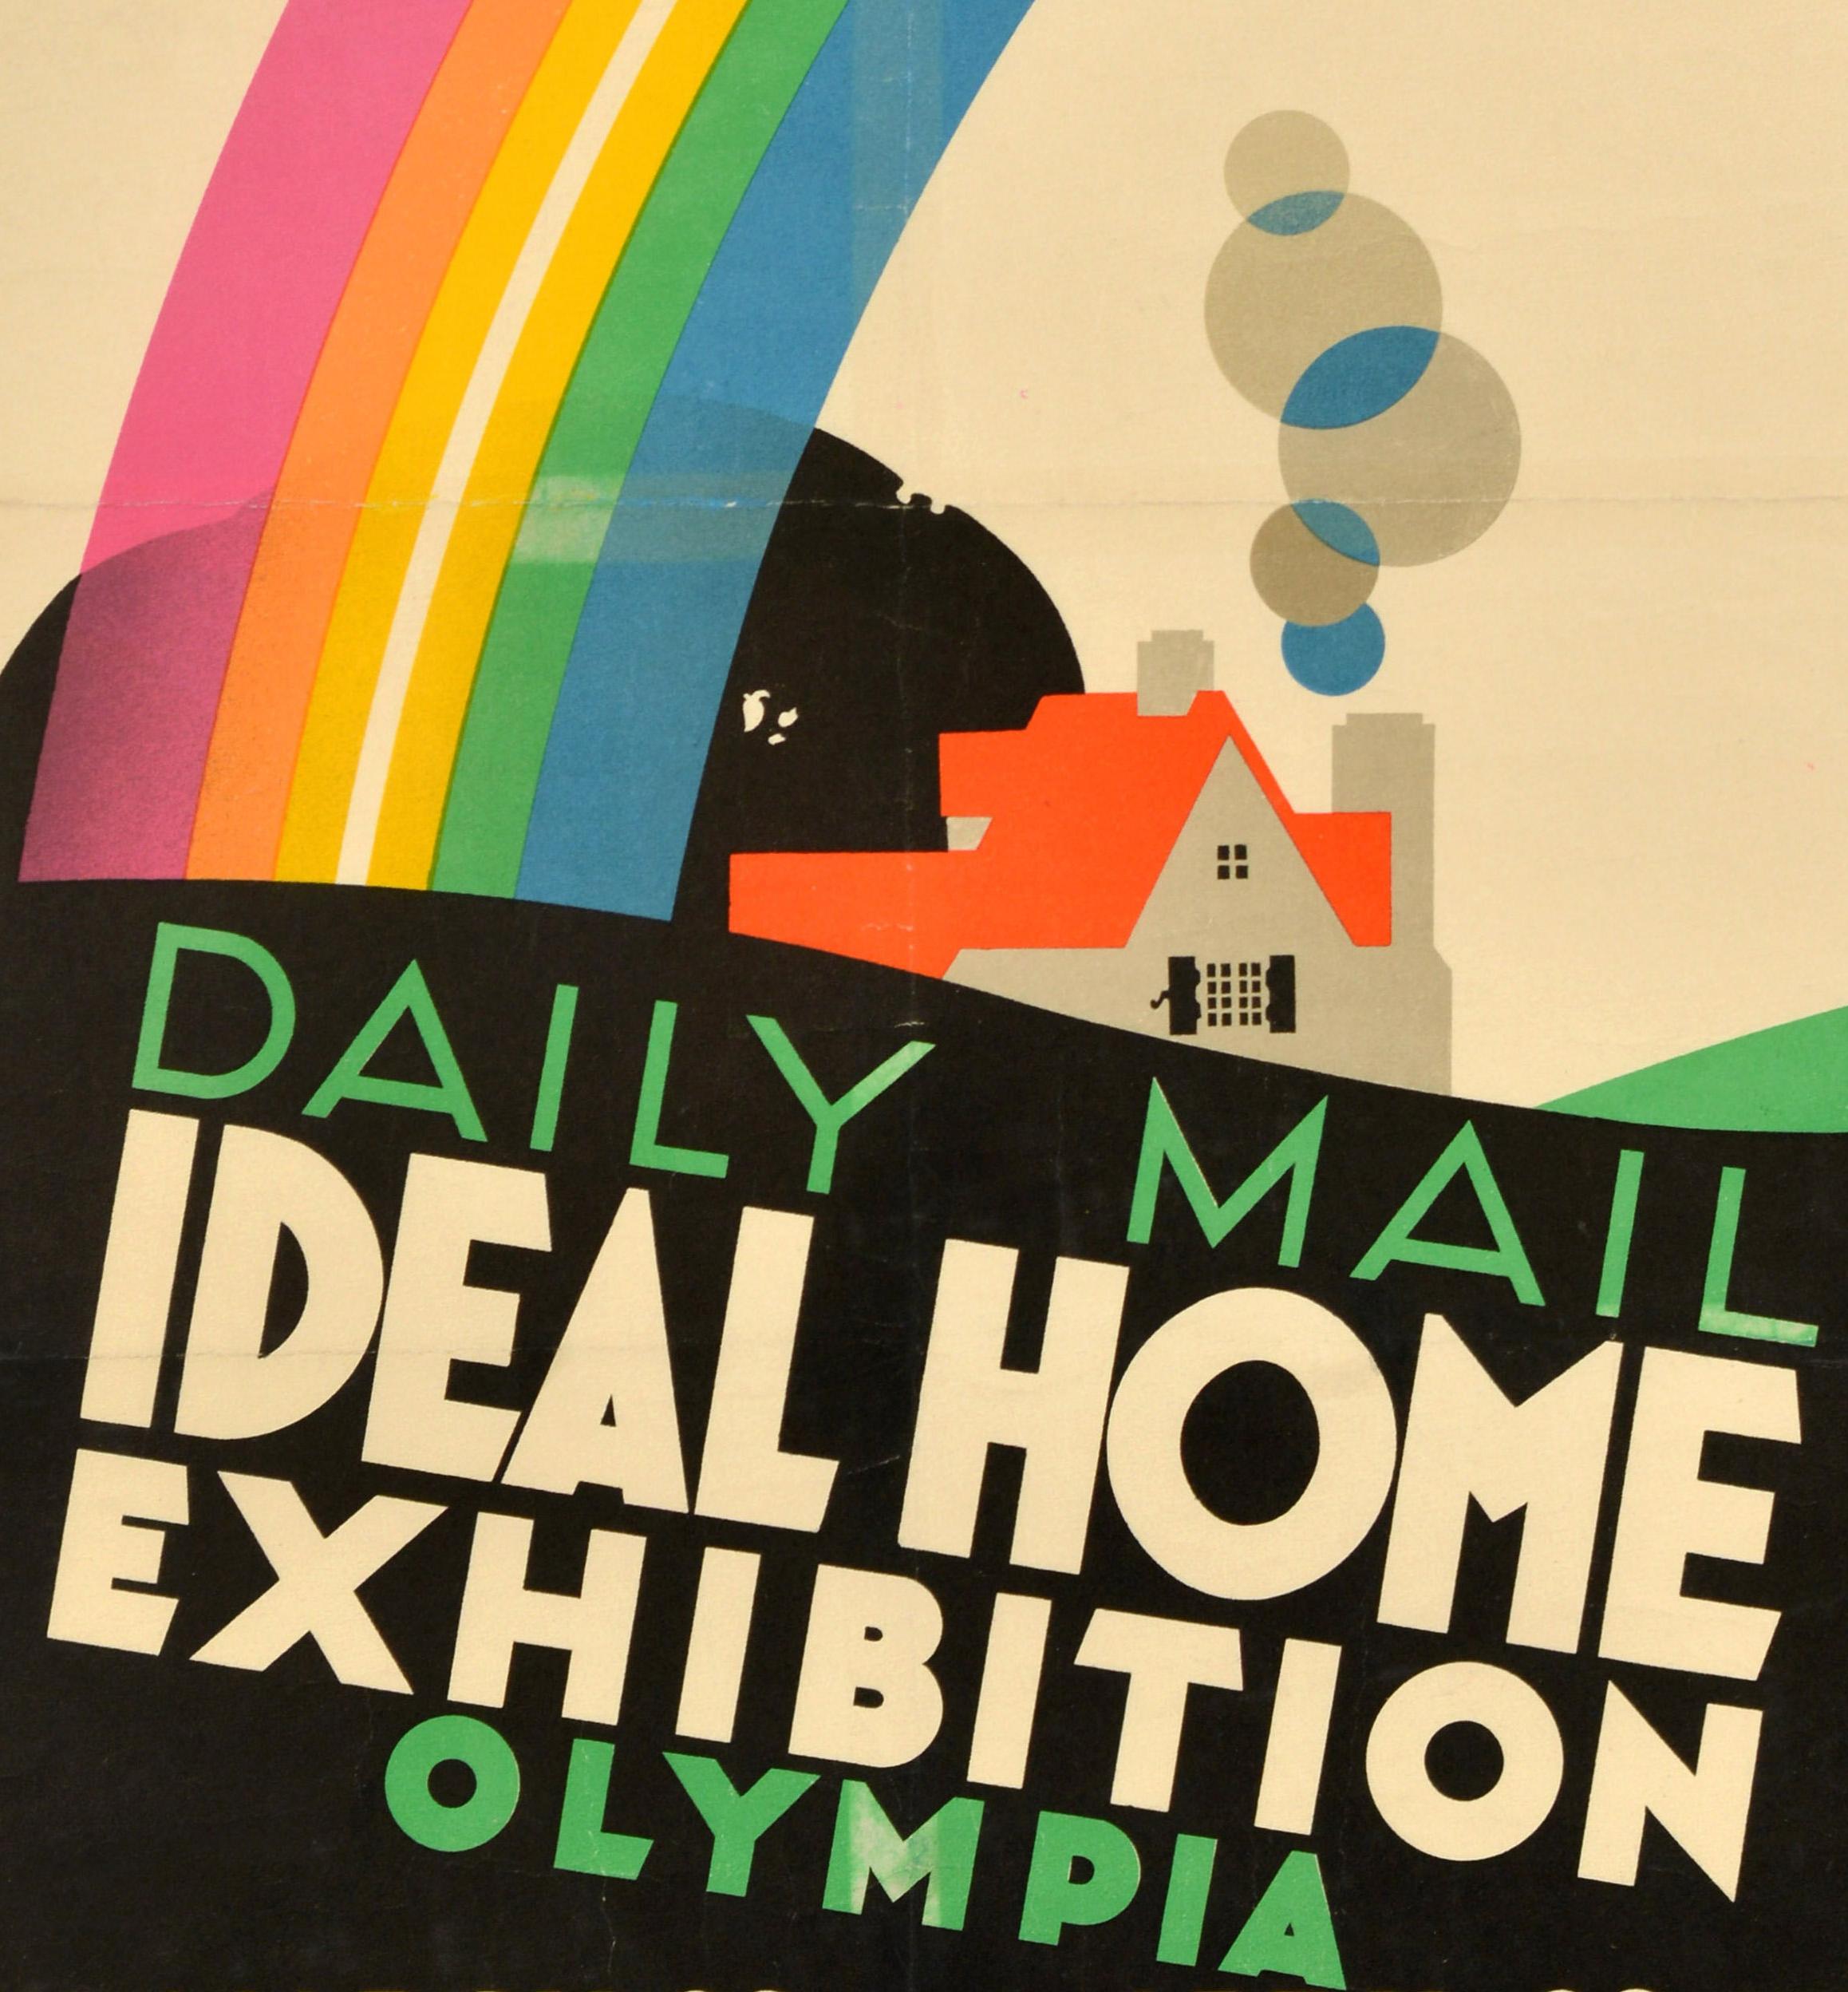 Original Vintage-Werbeplakat für die Daily Mail Ideal Home Exhibition Olympia, die vom 19. März bis zum 29. April stattfand - We Are Exhibiting - mit einer farbenfrohen Illustration des bekannten britischen Plakatkünstlers Frank Newbould